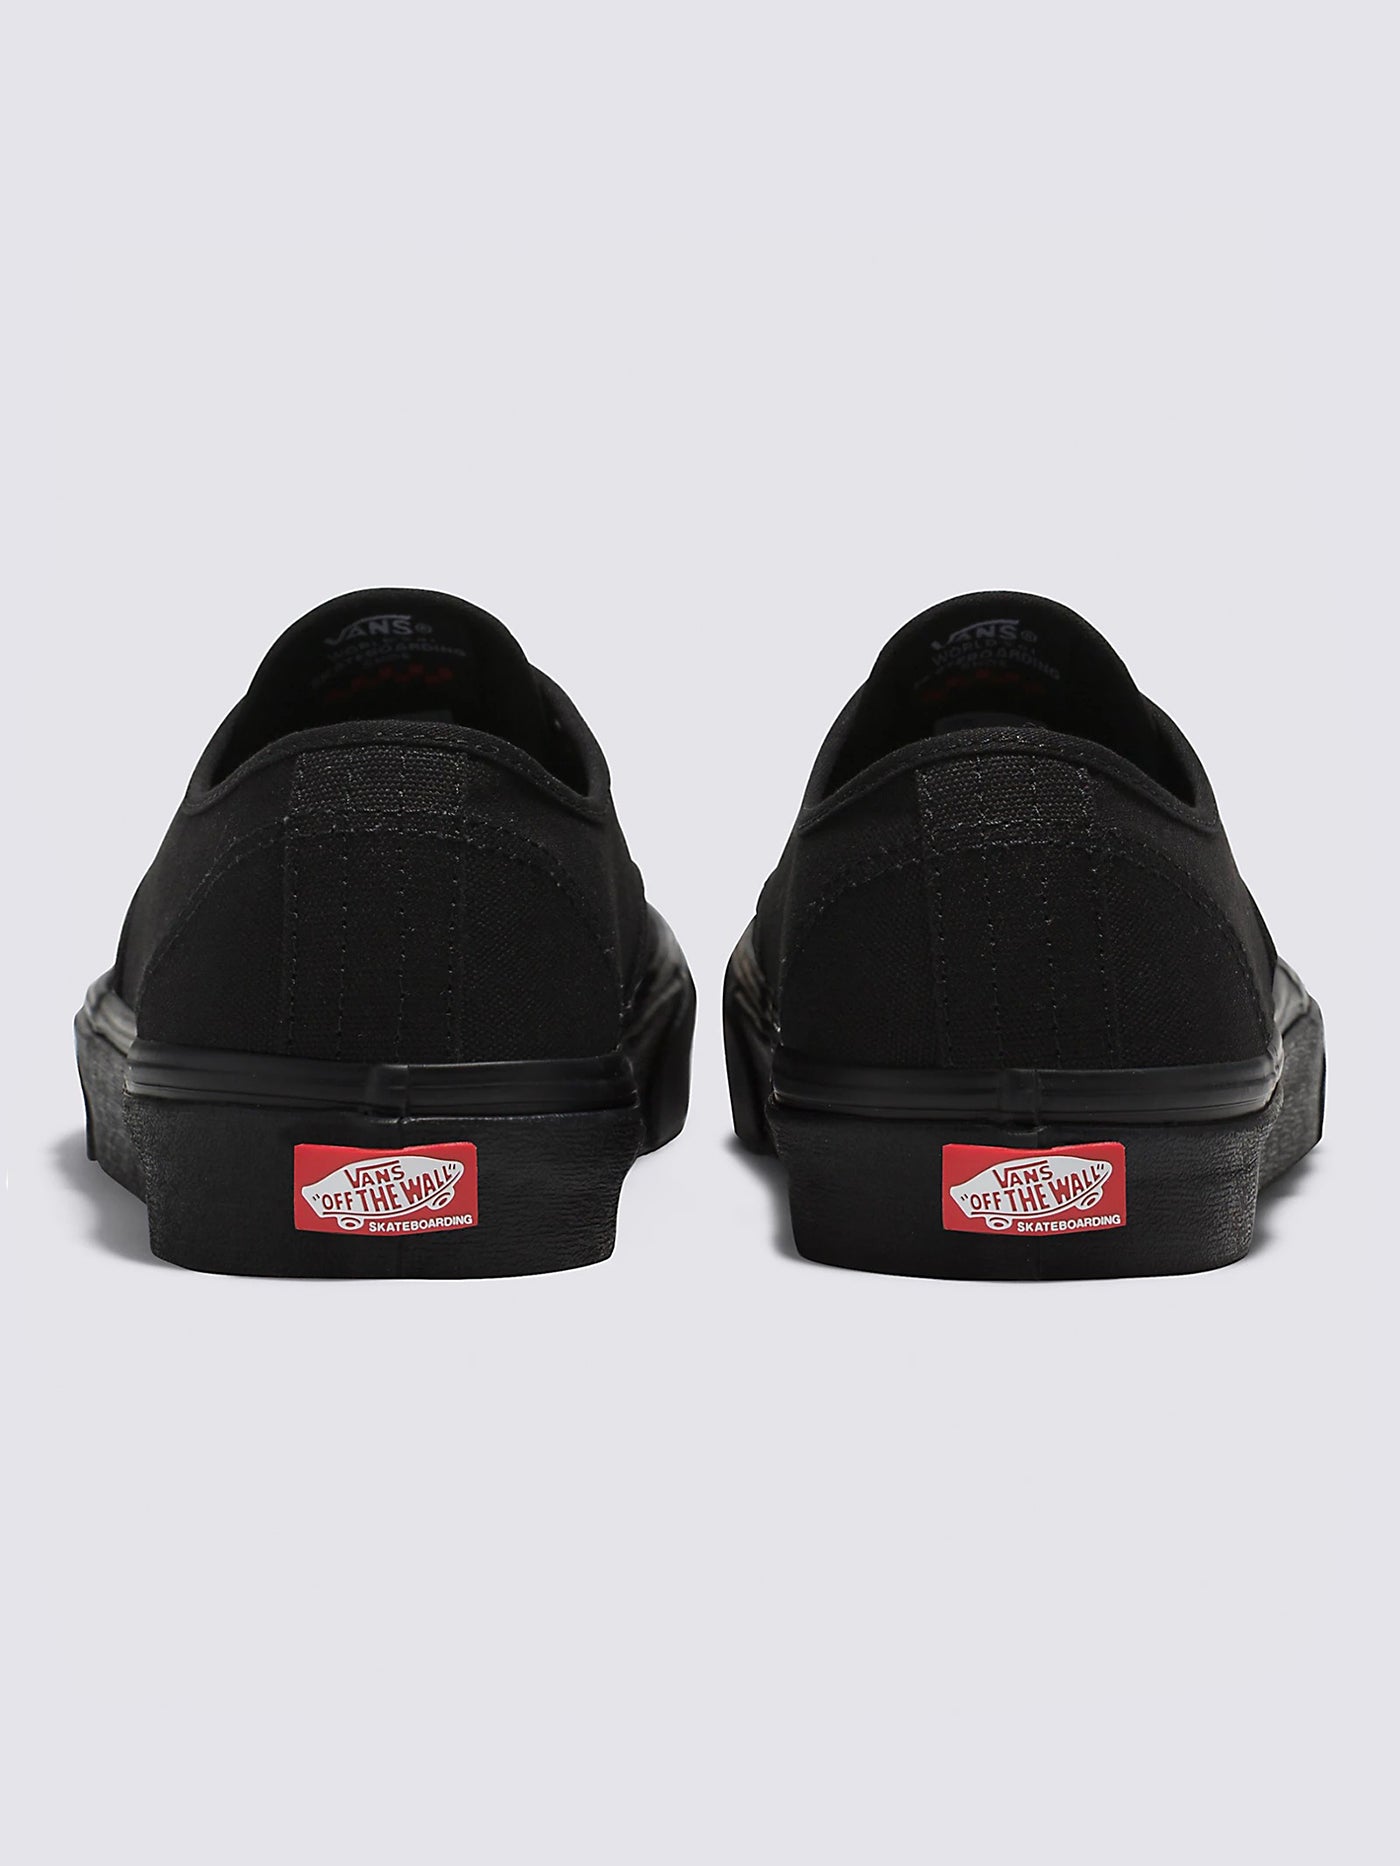 Vans Skate Authentic Black/Black Shoes